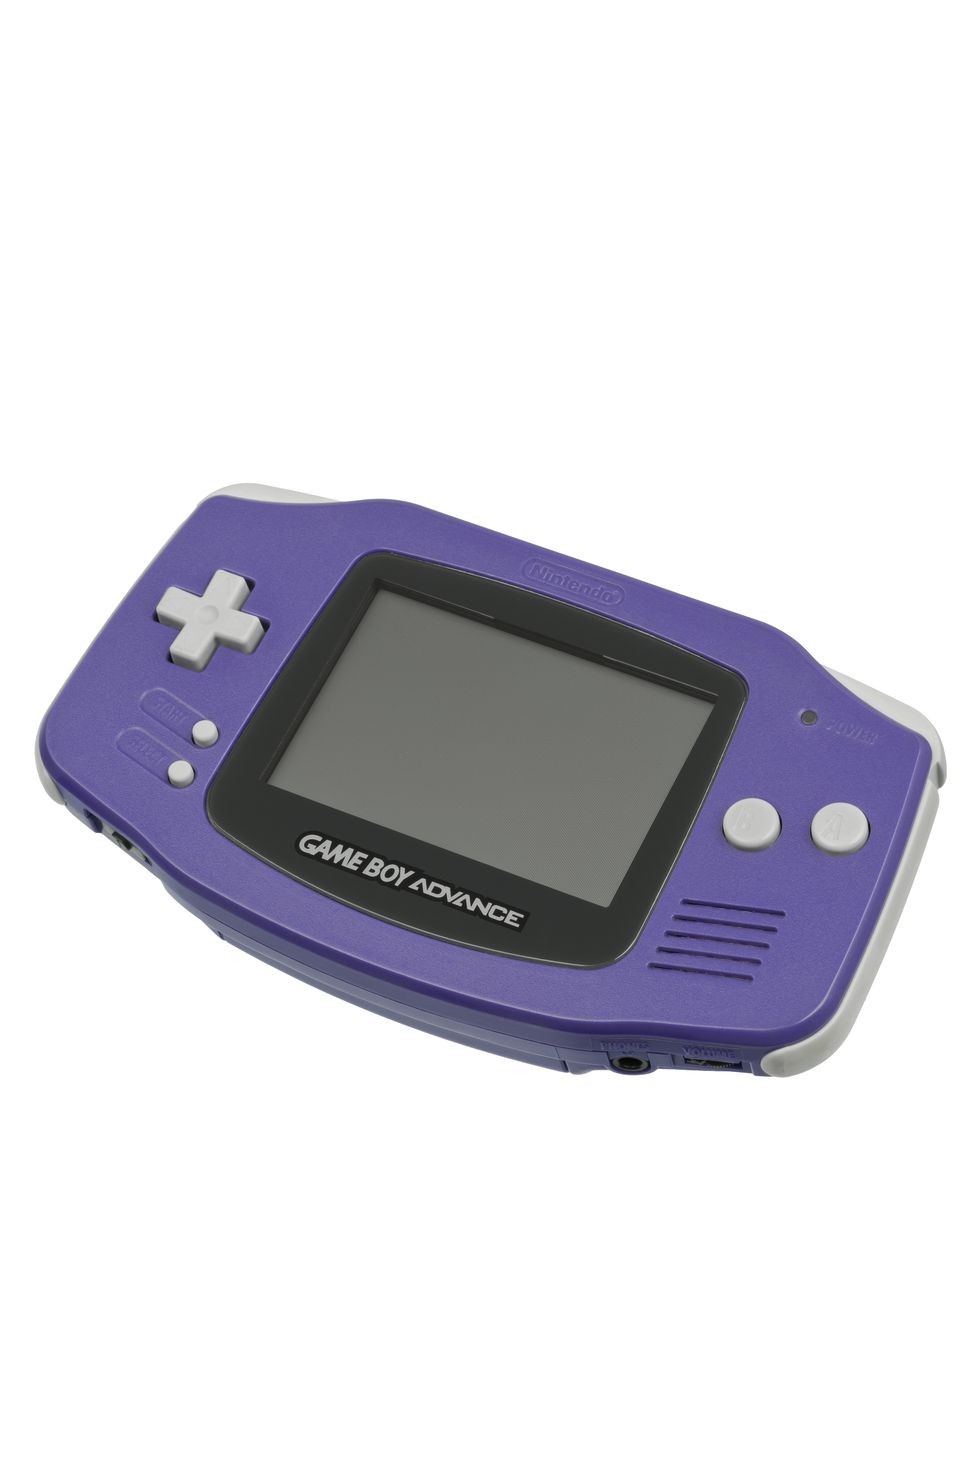 01 - RETRO GAMING - Changer la coque d'une Game Boy Color à